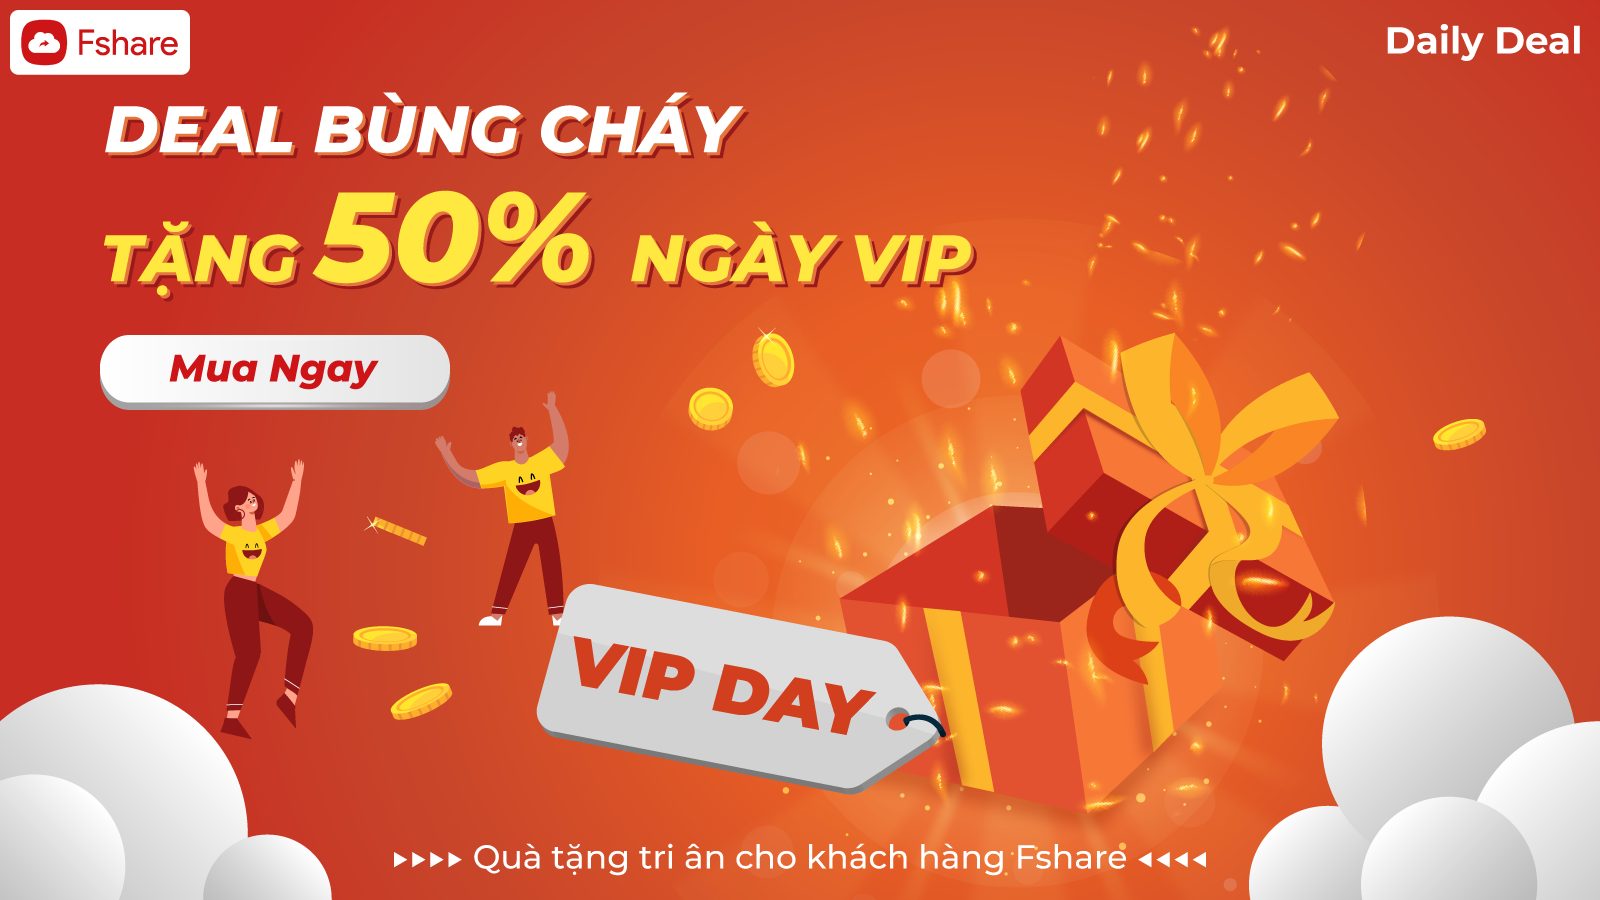 Fshare tung khuyến mãi tặng 50% ngày sử dụng khi mua VIP